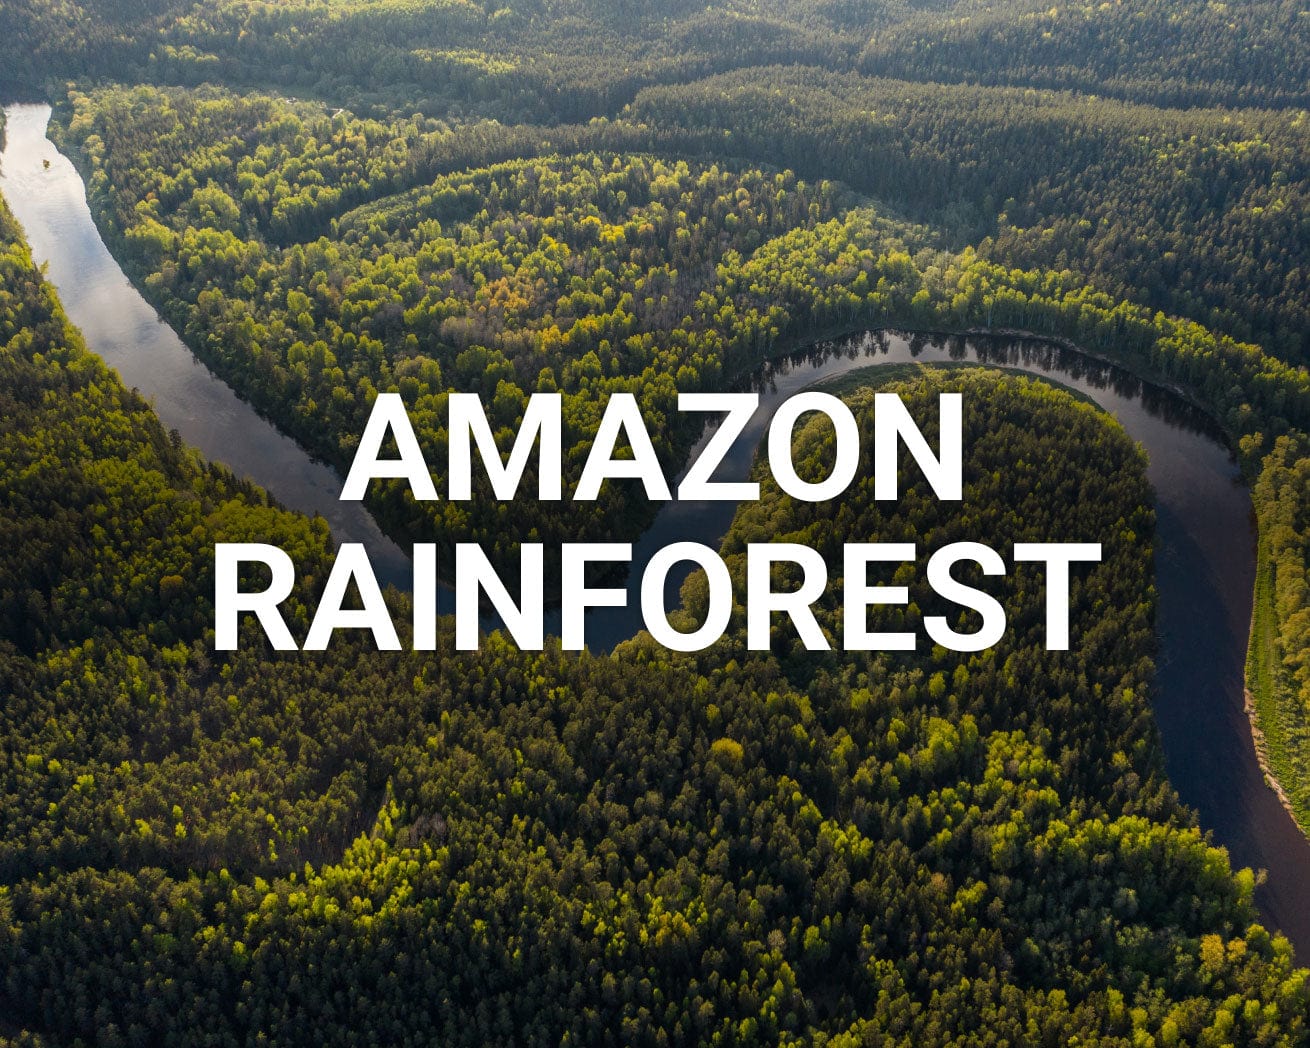 Amazon Rainforest main